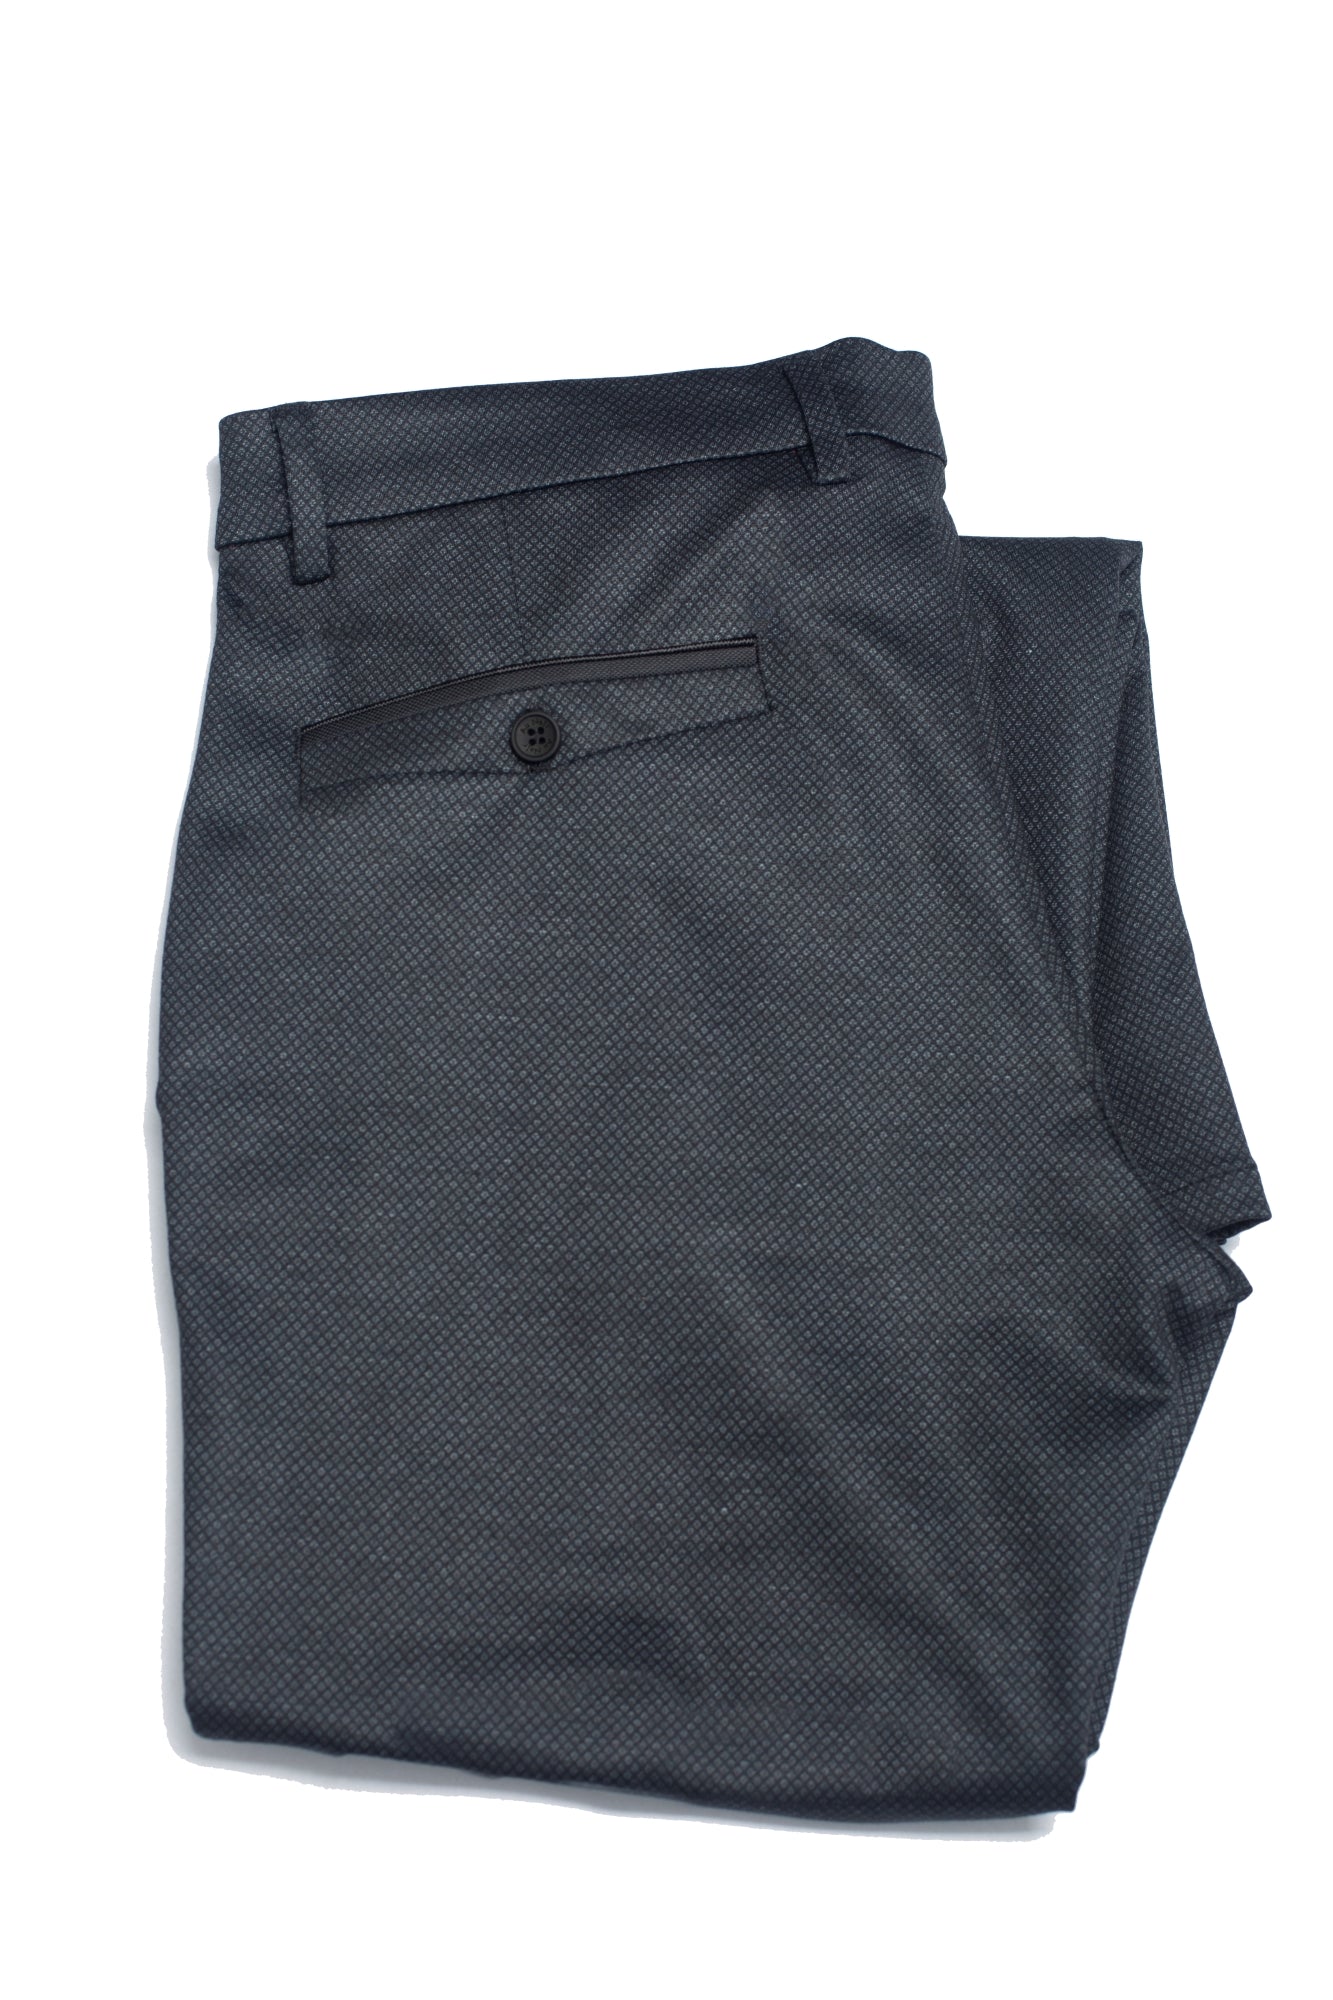 Pantalon pour homme par Au Noir | REEVES charcoal | Machemise.ca, inventaire complet de la marque Au Noir